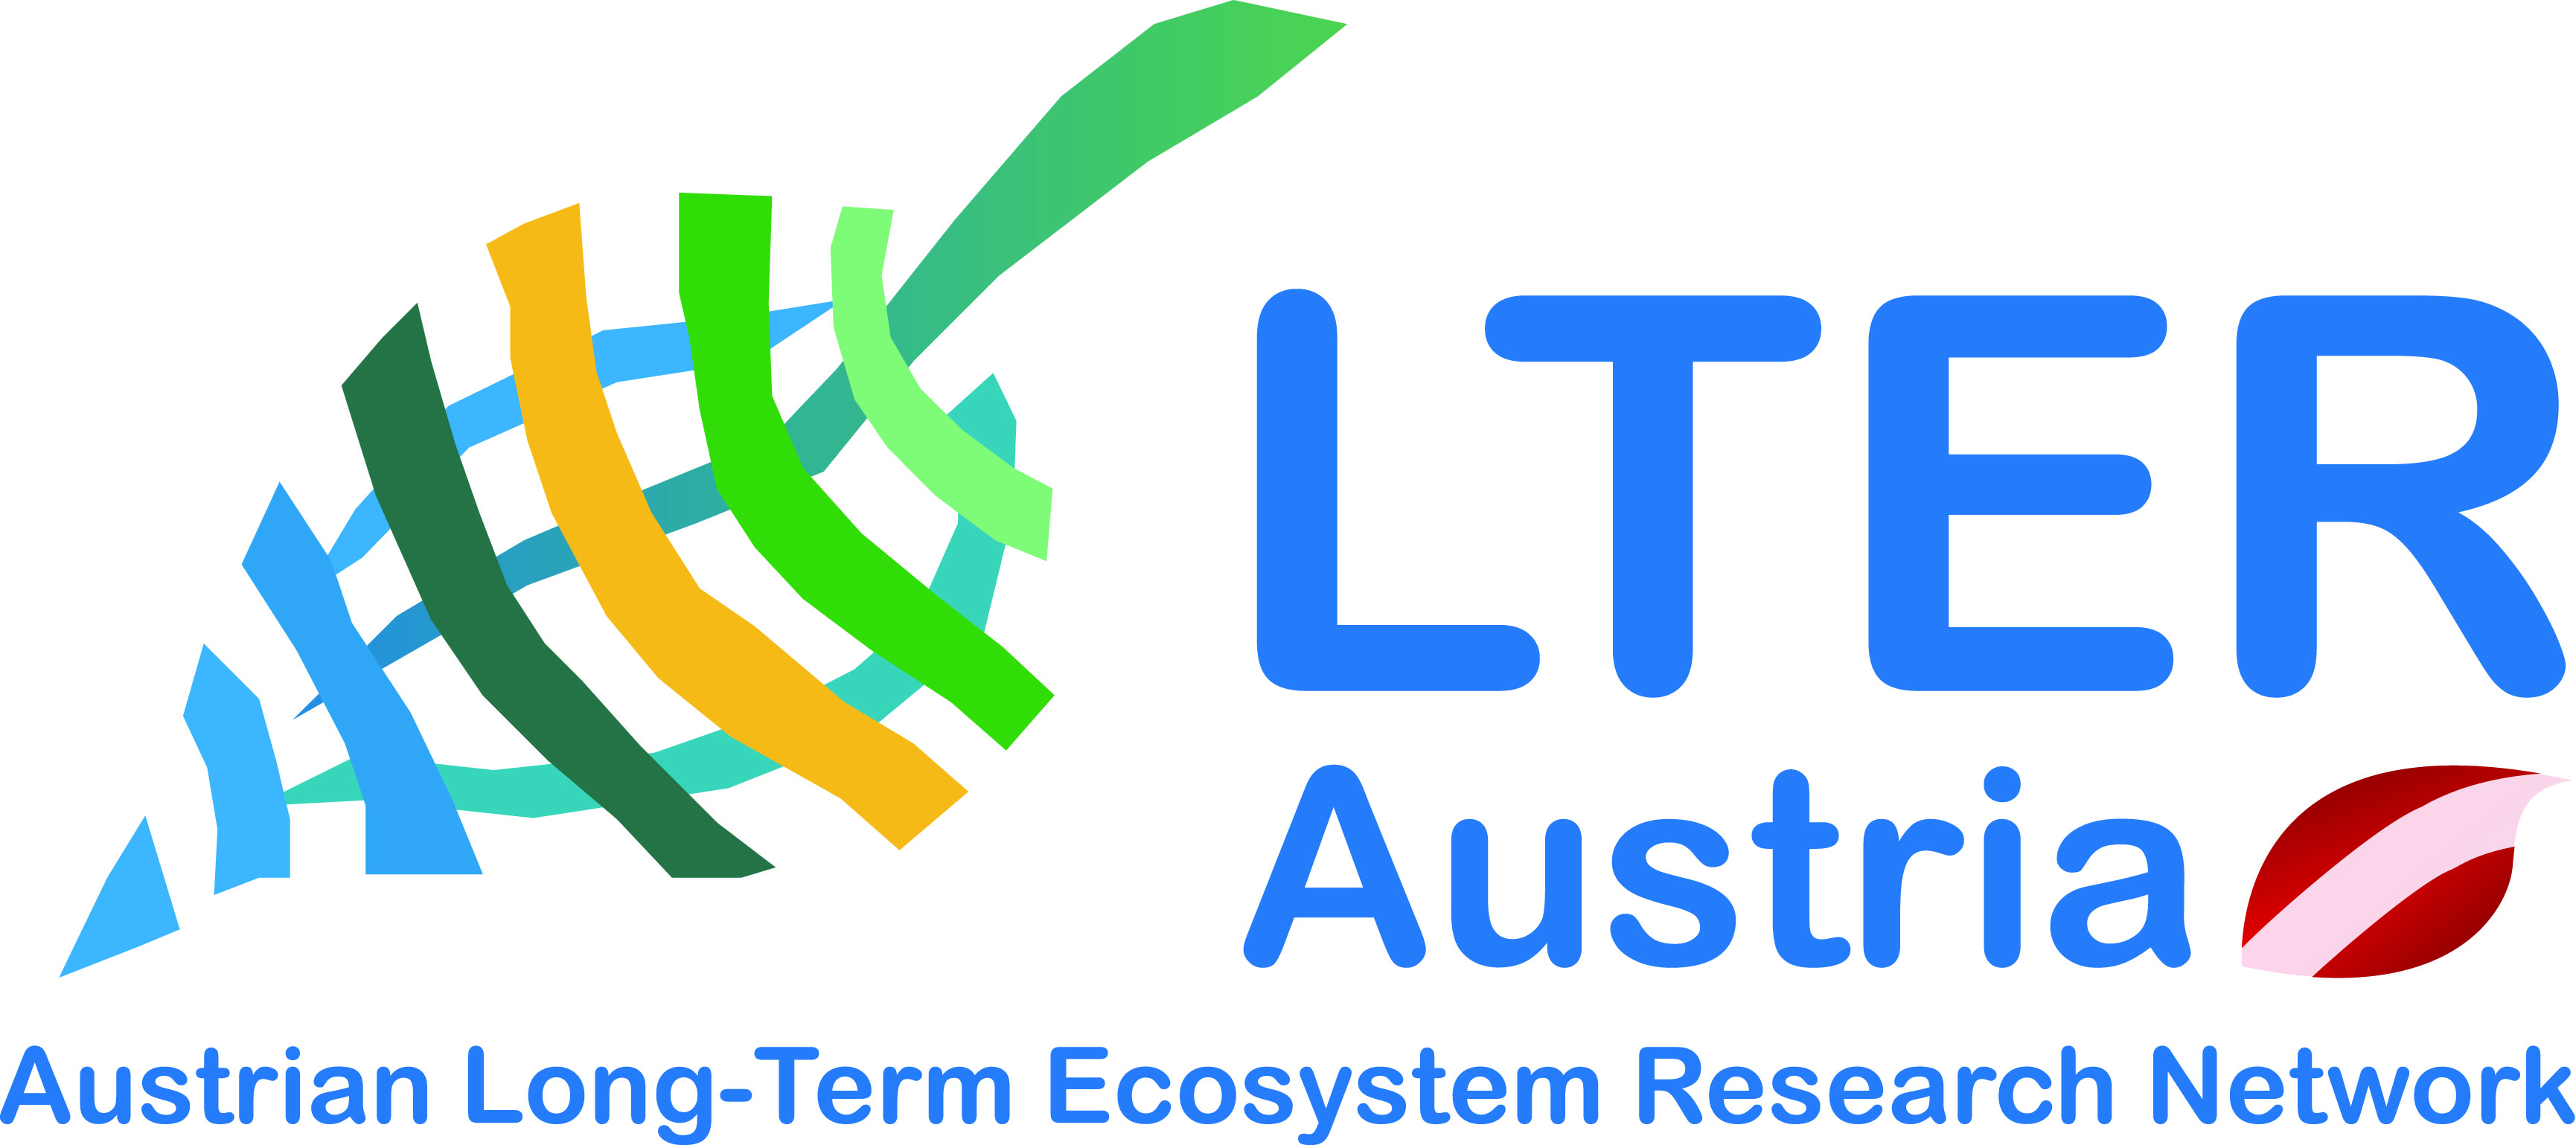 Neu: Weißbuch zur langfristigen Ökosystem-Forschung in Österreich